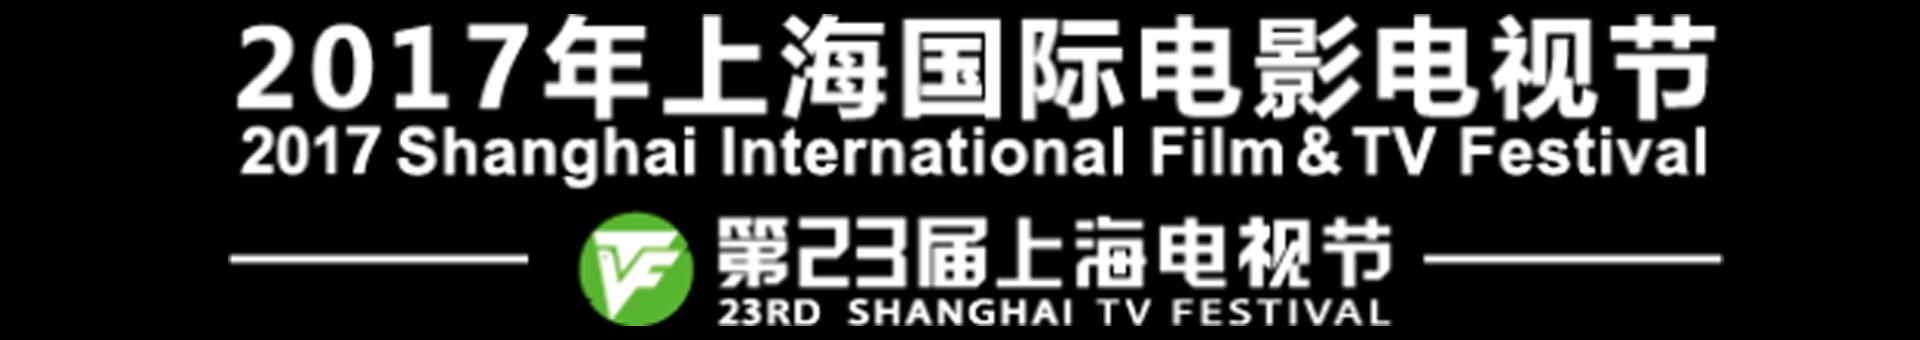 上海电视节BANNNER